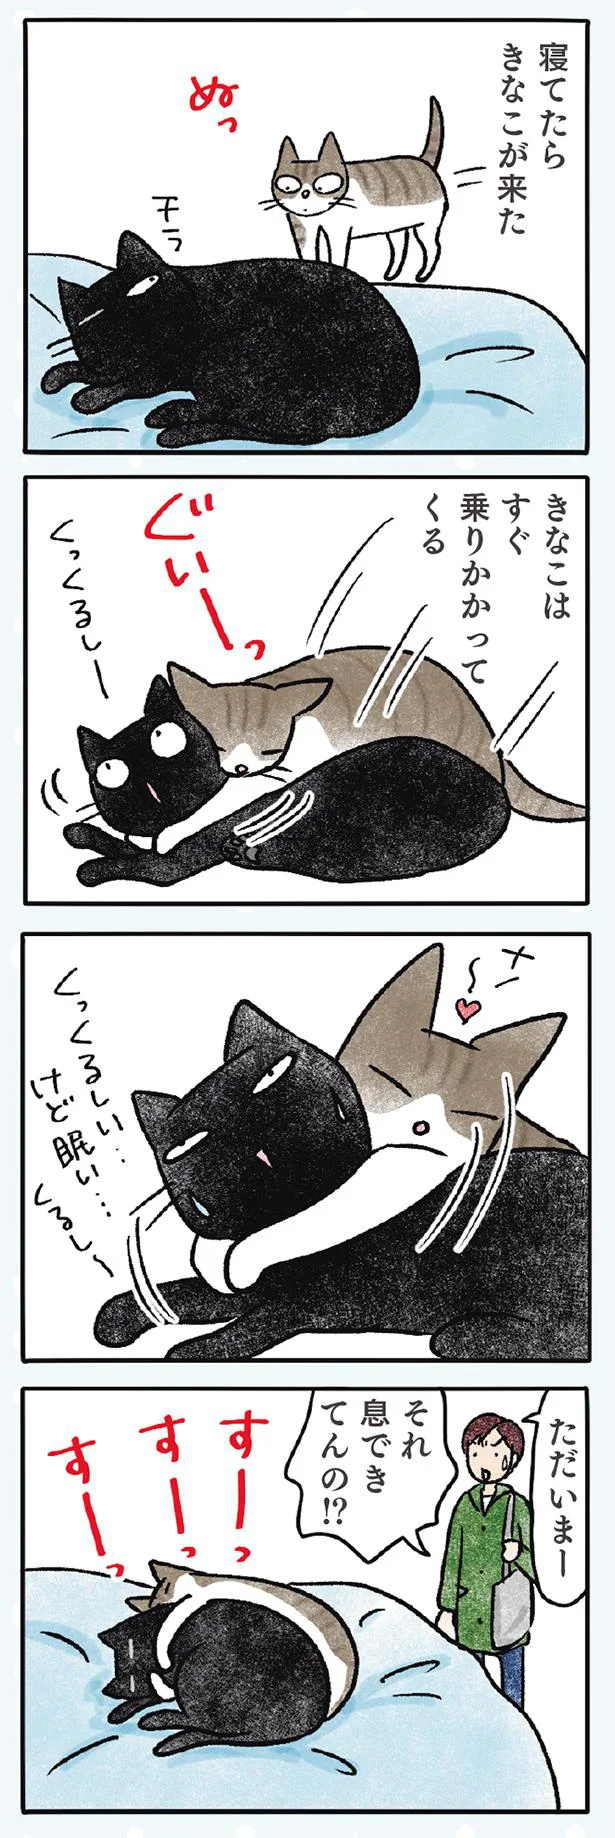 【画像を見る】黒猫ナノとキジシロ猫きなこ